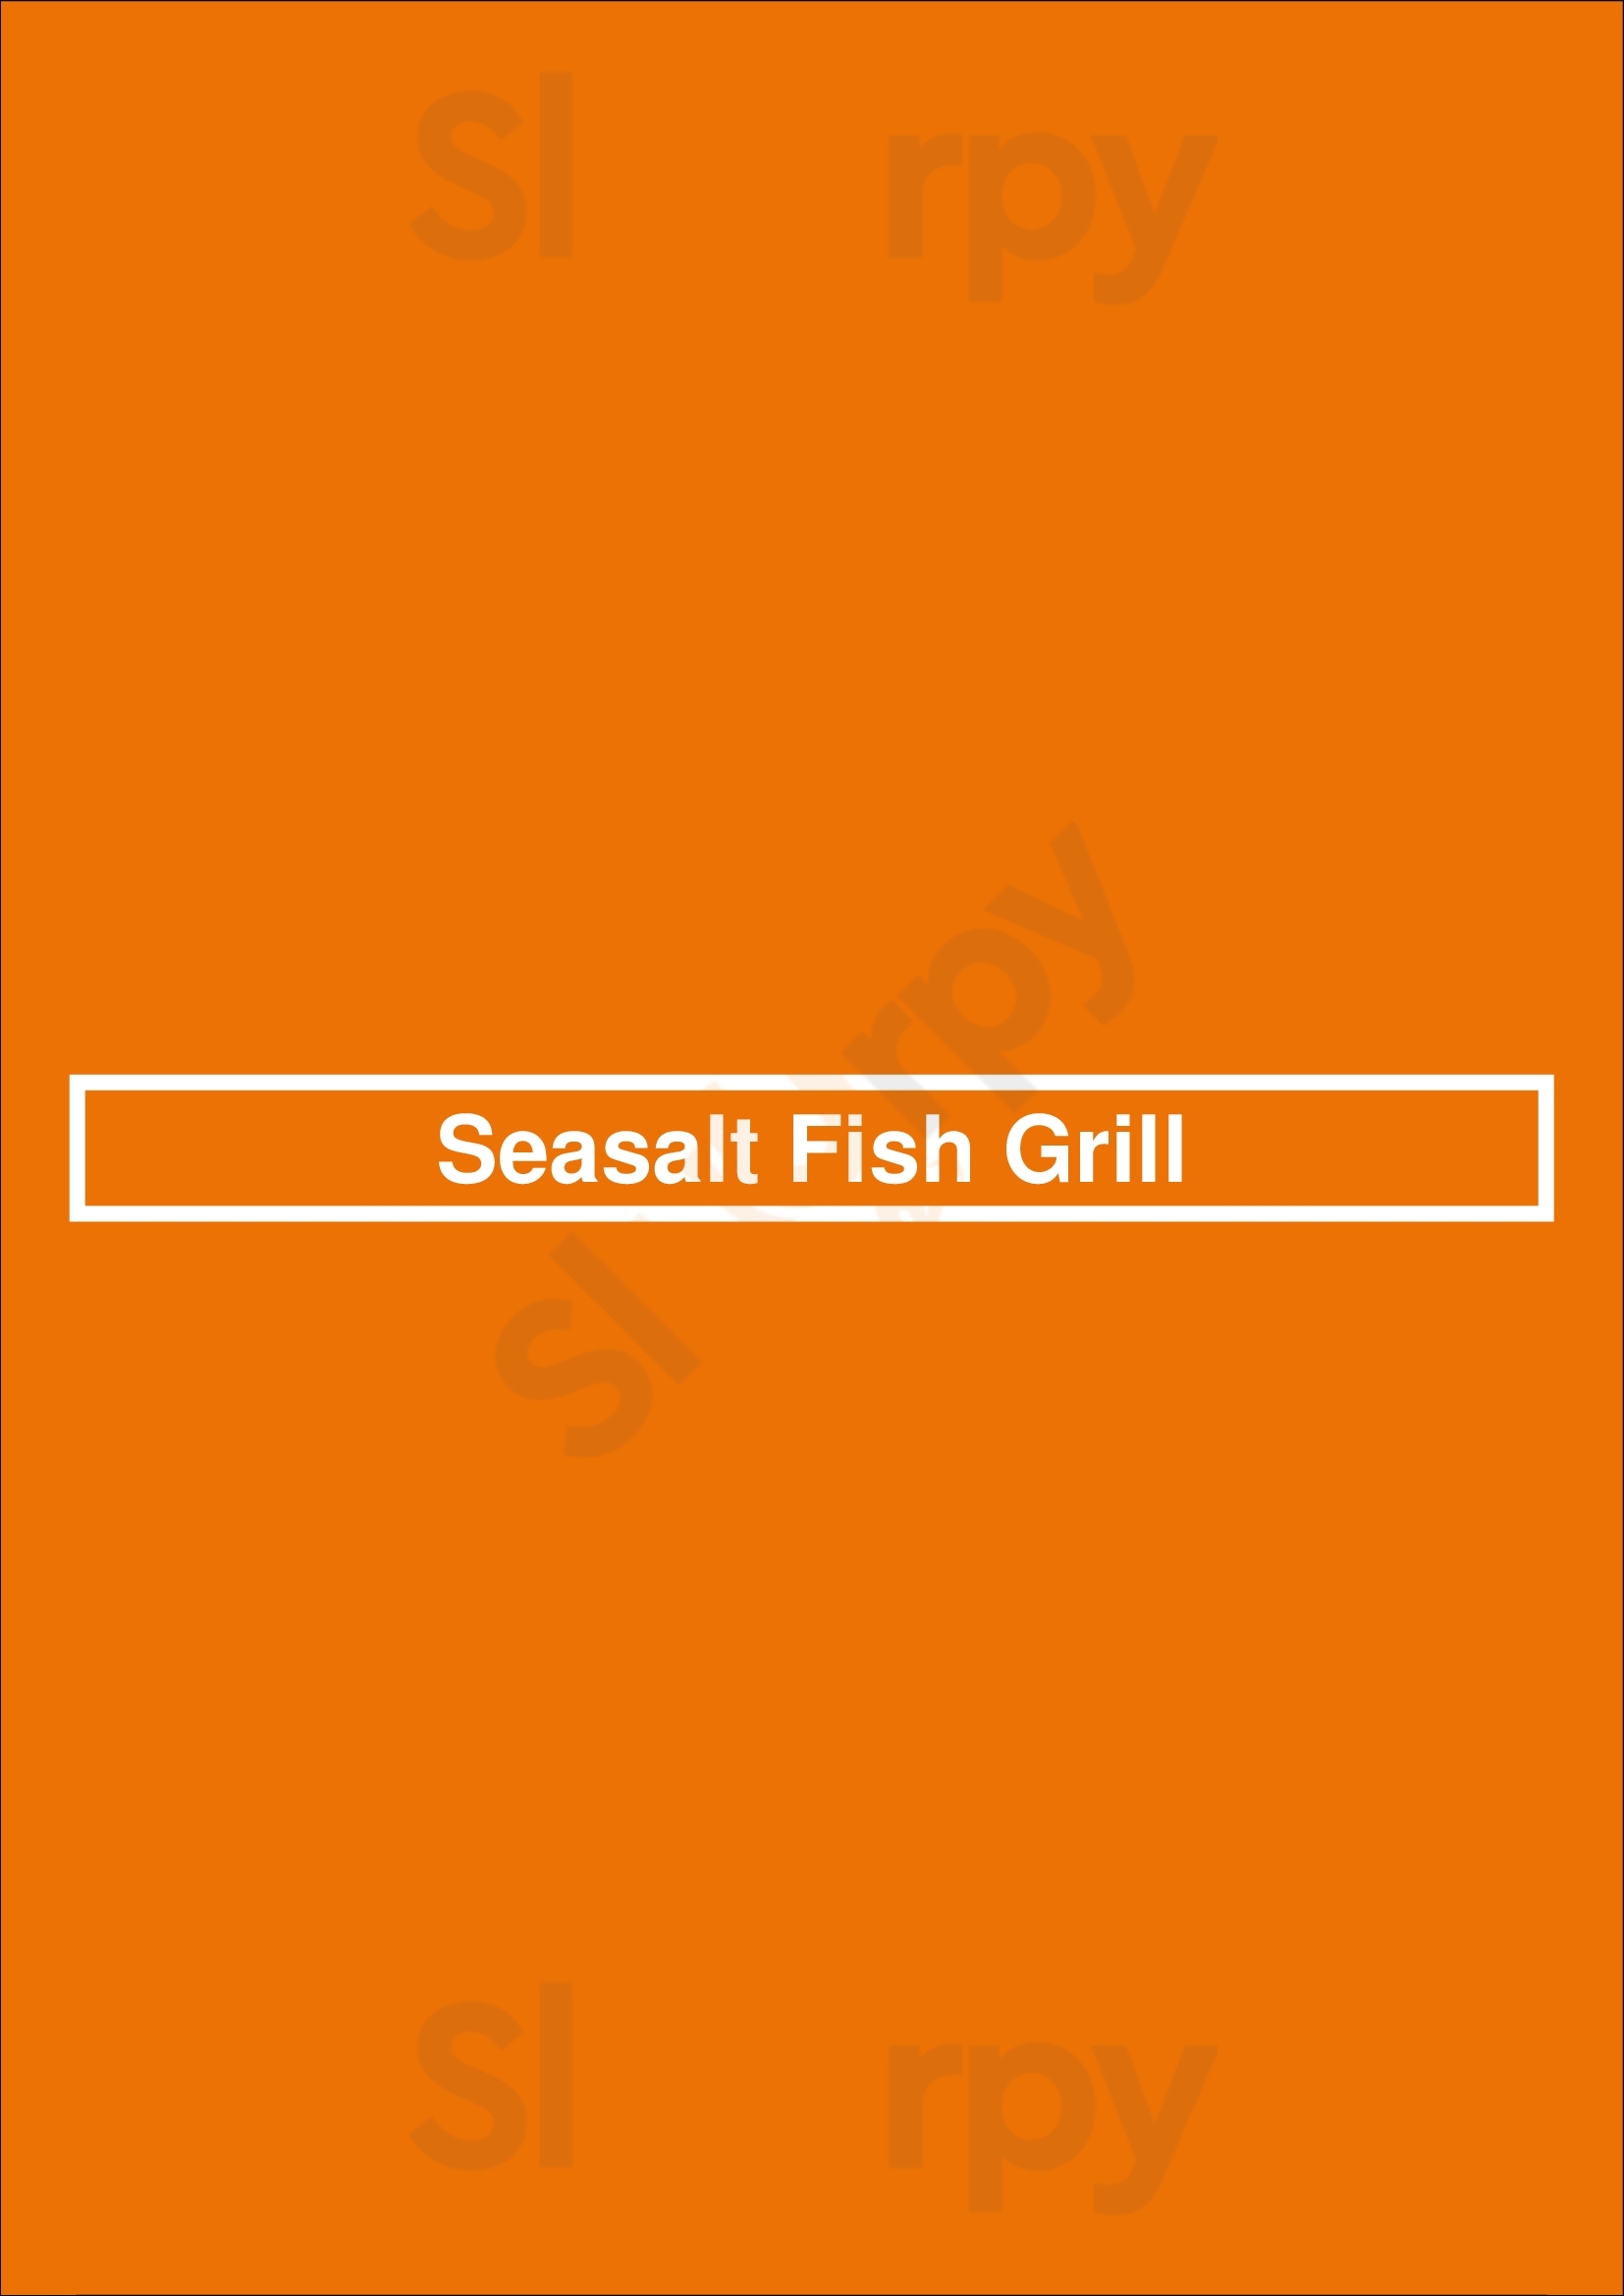 Seasalt Fish Grill Santa Monica Menu - 1